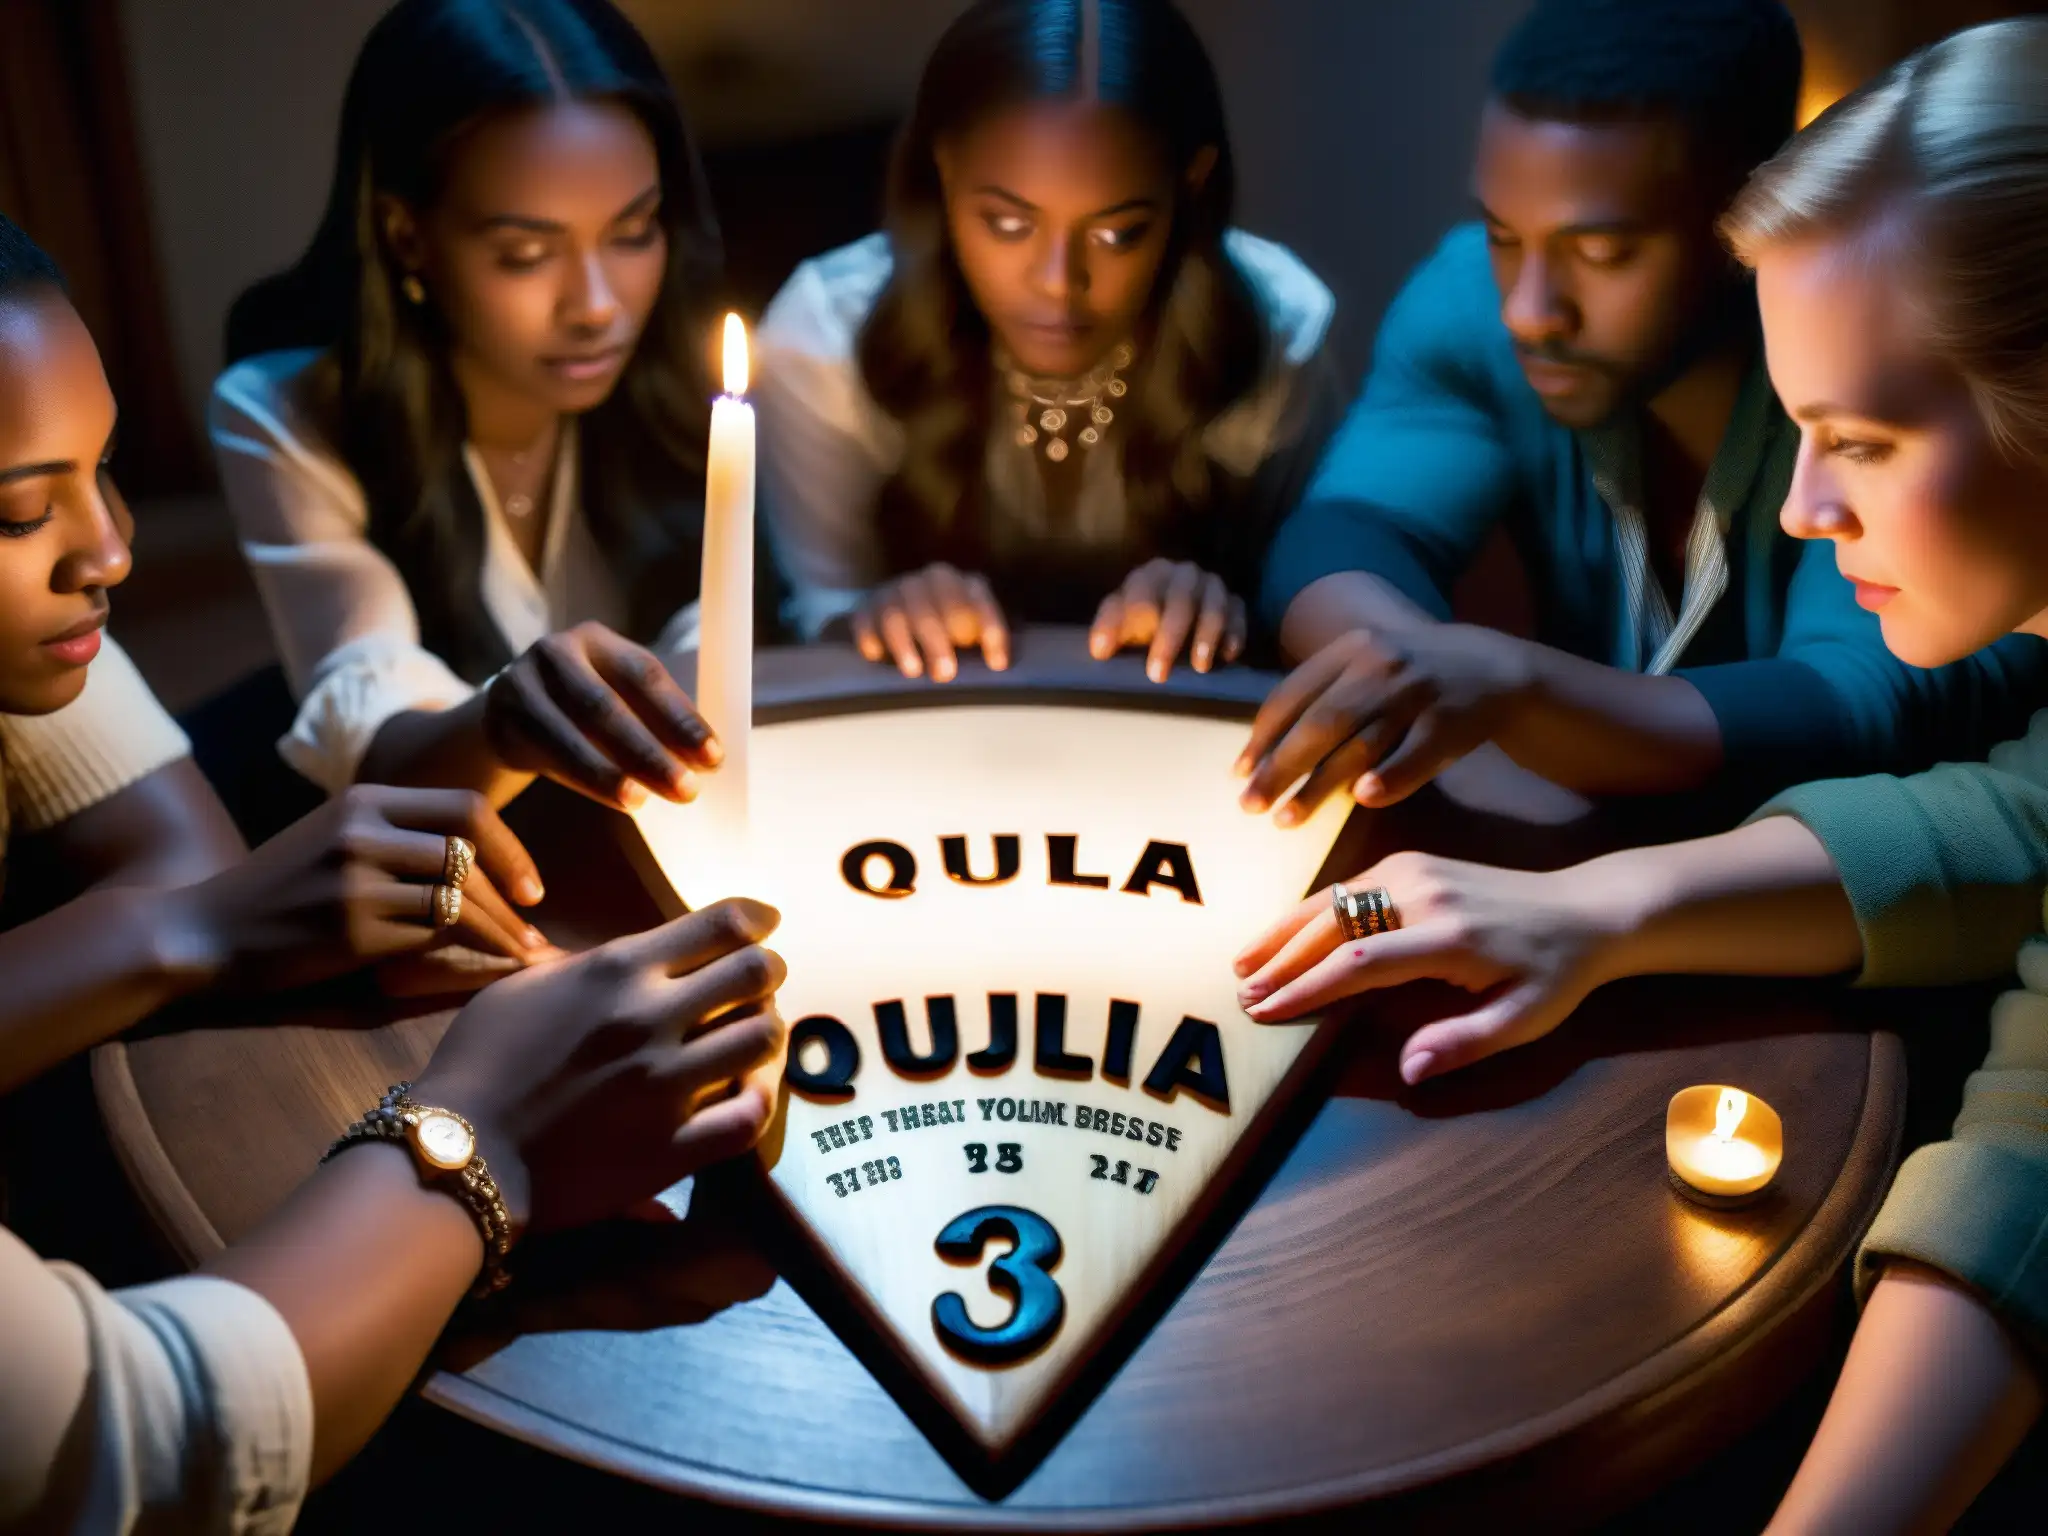 Un grupo de personas se reúnen alrededor de una tabla Ouija en penumbra, con expresiones de curiosidad y tensión